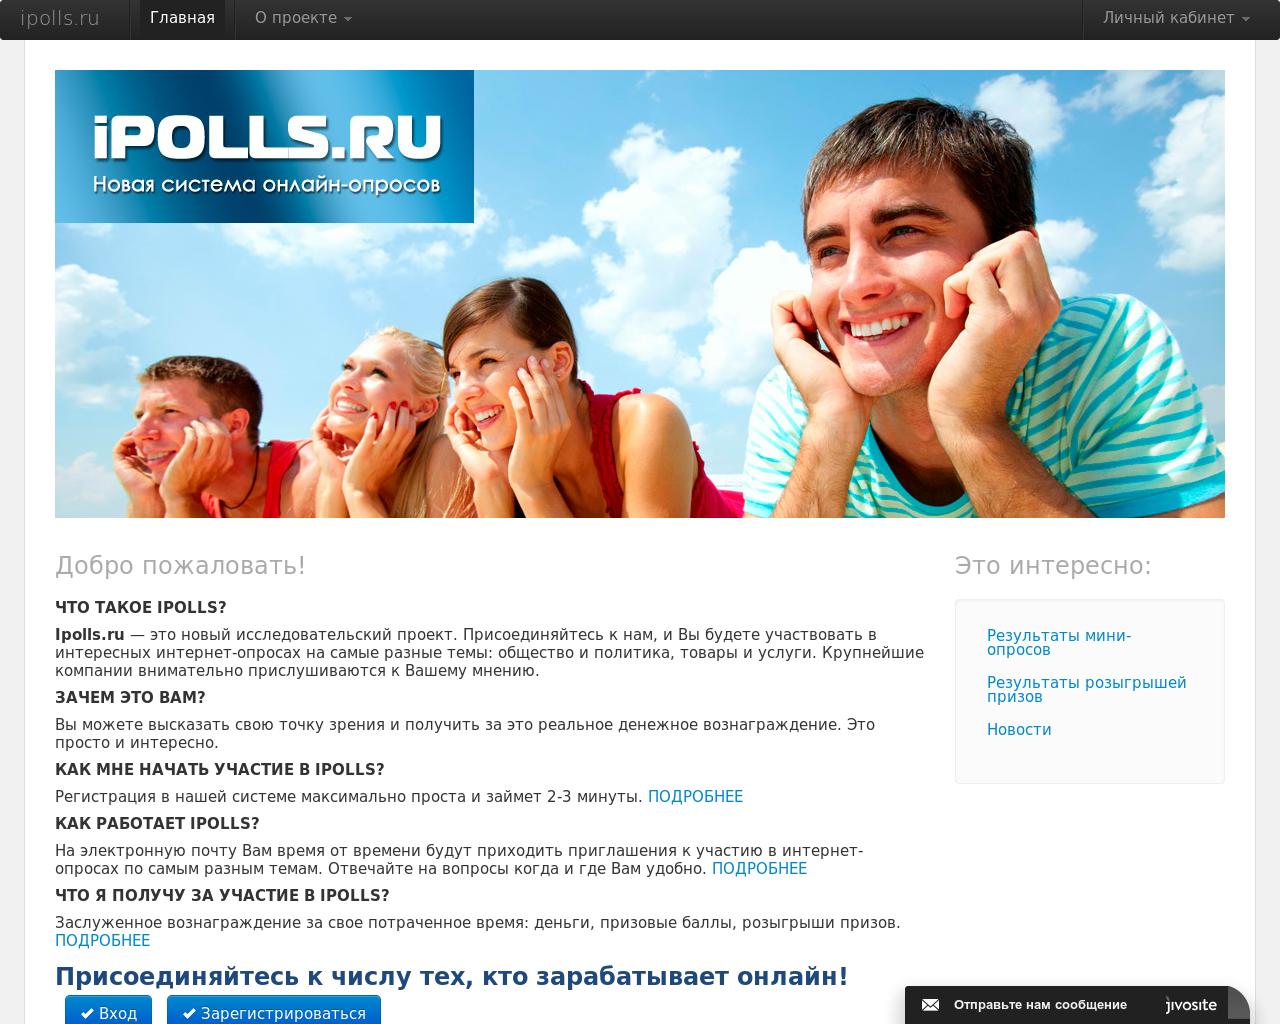 Изображение сайта ipolls.ru в разрешении 1280x1024